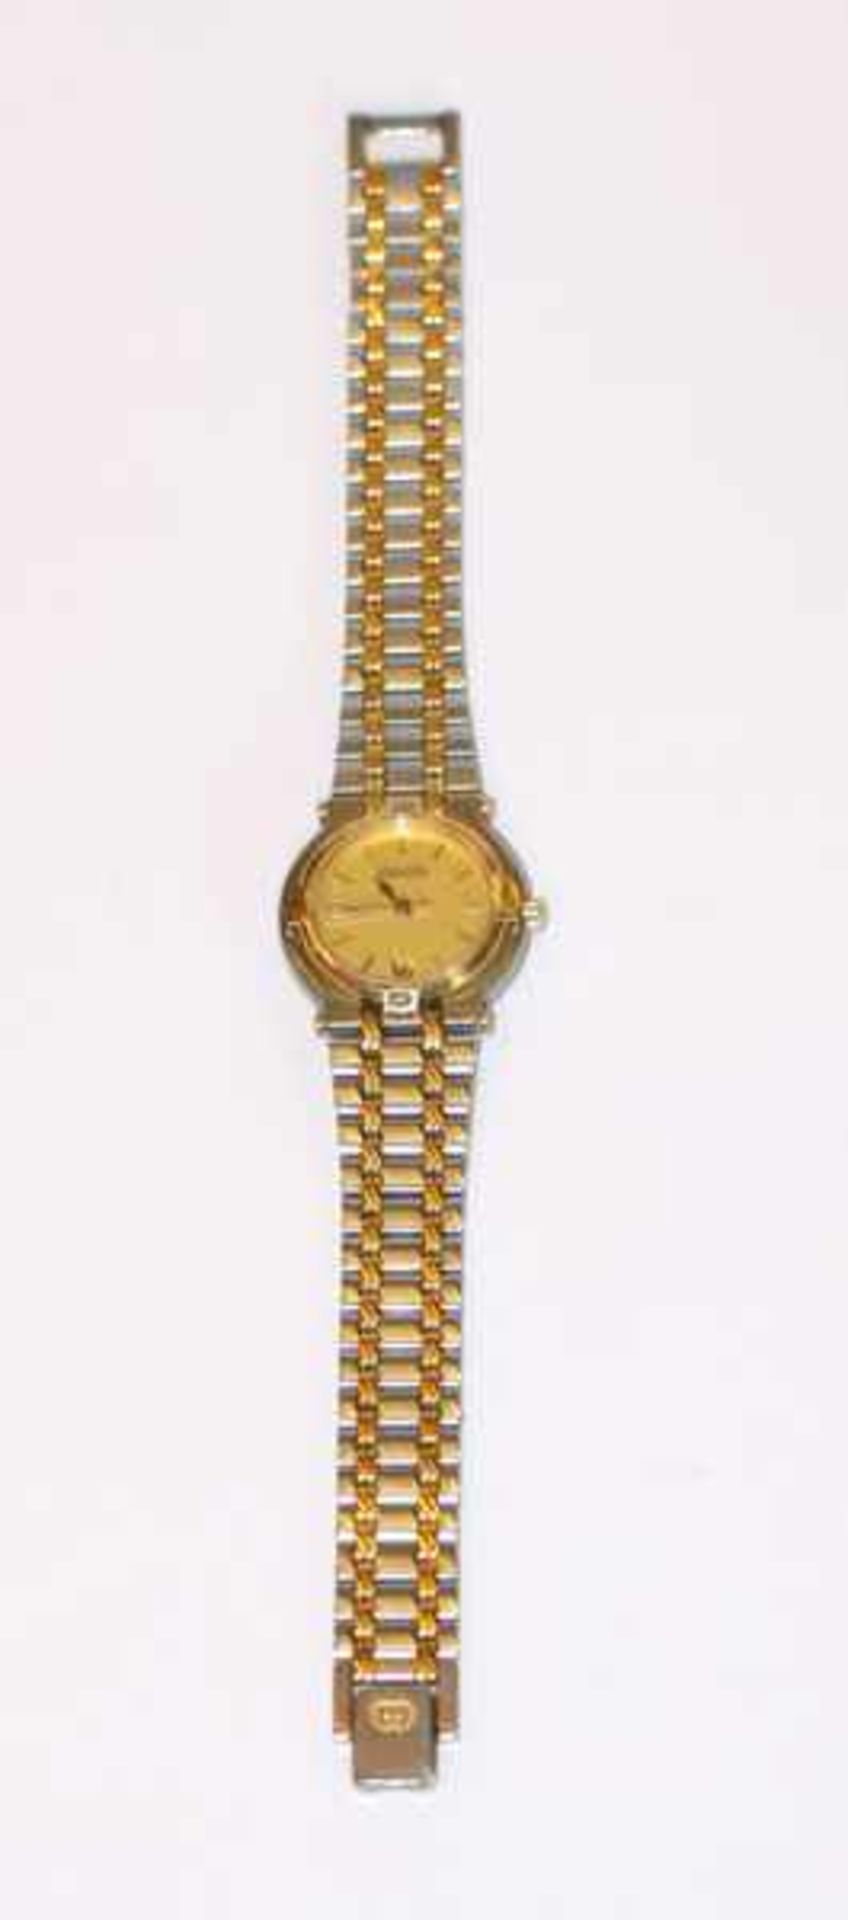 Gucci Stahl Damen-Armbanduhr mit Datum, Tragespuren, Funktion nicht geprüft